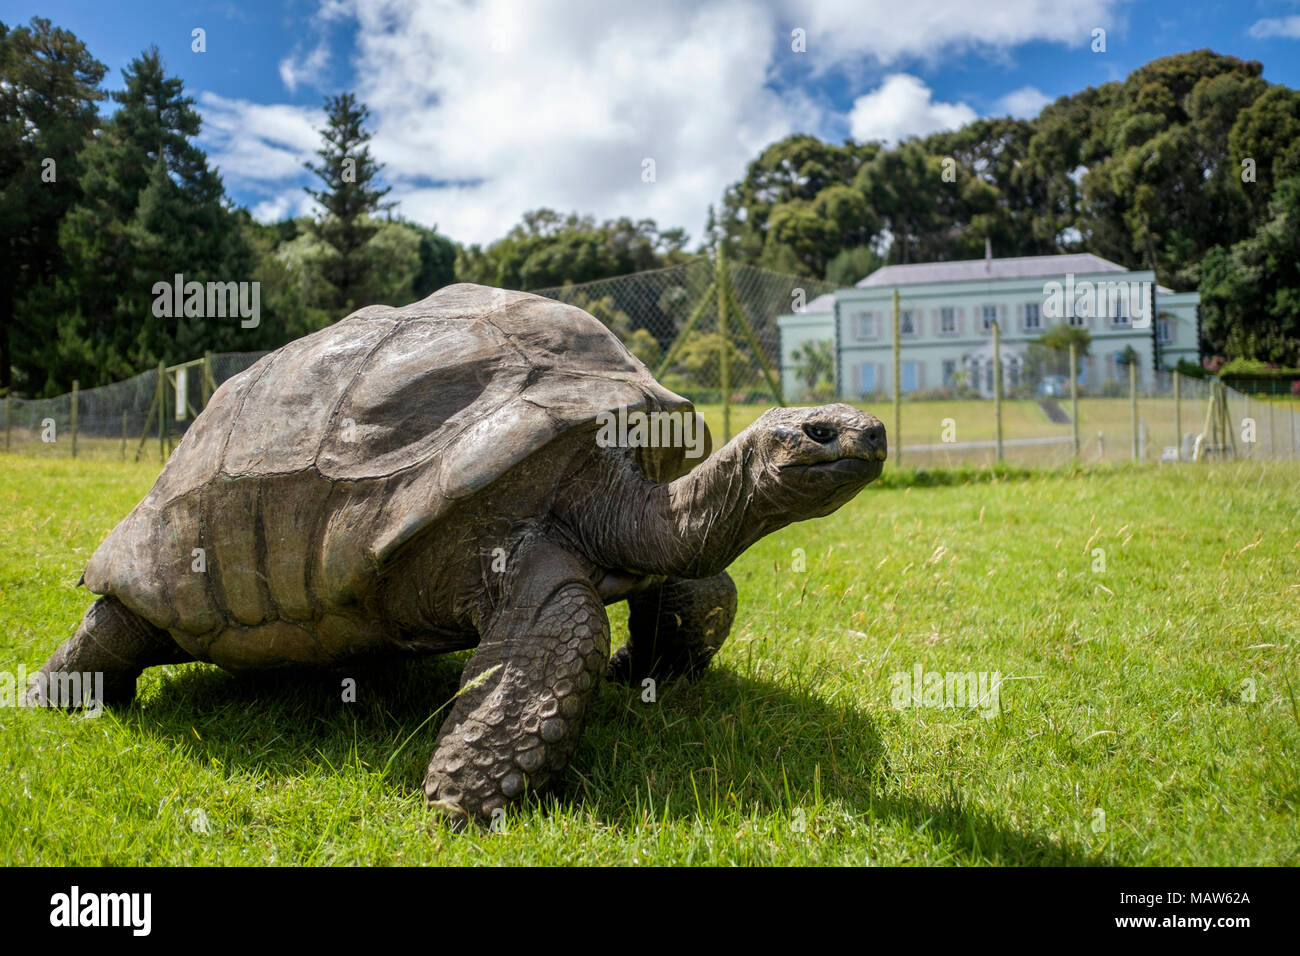 Jonathan, une tortue géante des Seychelles, le plus ancien animal terrestre vivant au monde, âgé d'environ 190 ans.Plantation House, Sainte-Hélène. Banque D'Images